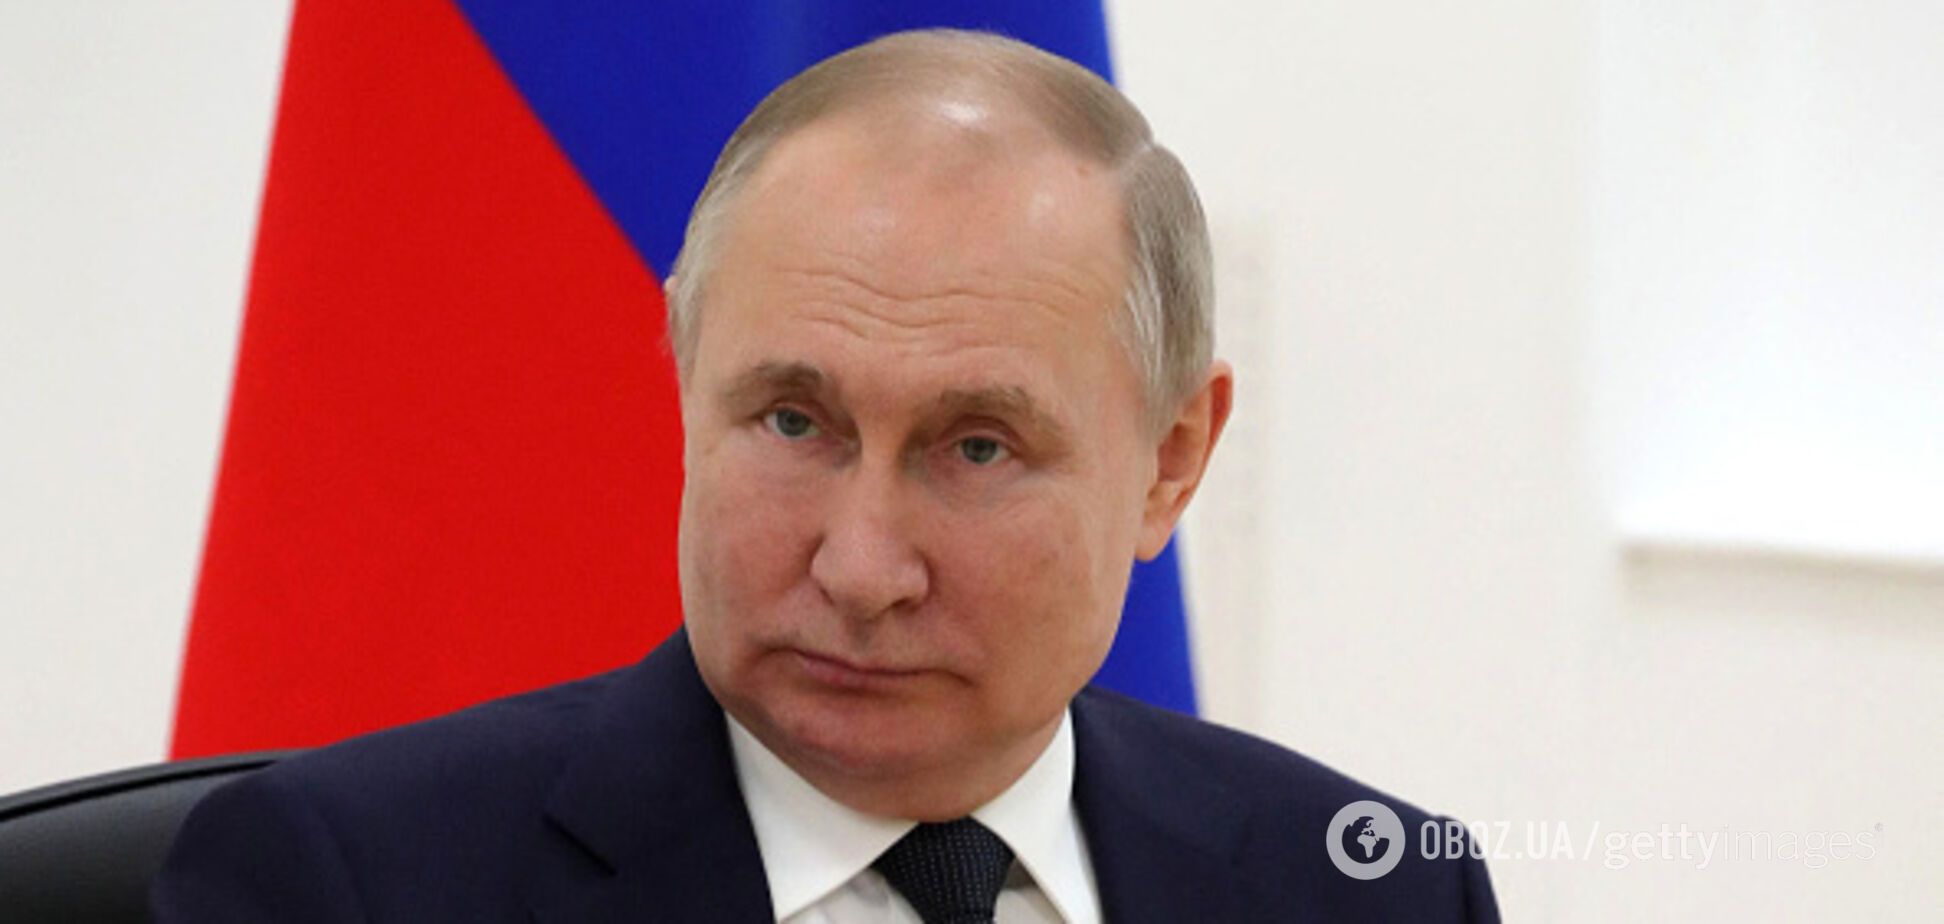 Путину страшно, он боится и чувствует себя неуверенно: в поведении и мимике президента России заметили знаки